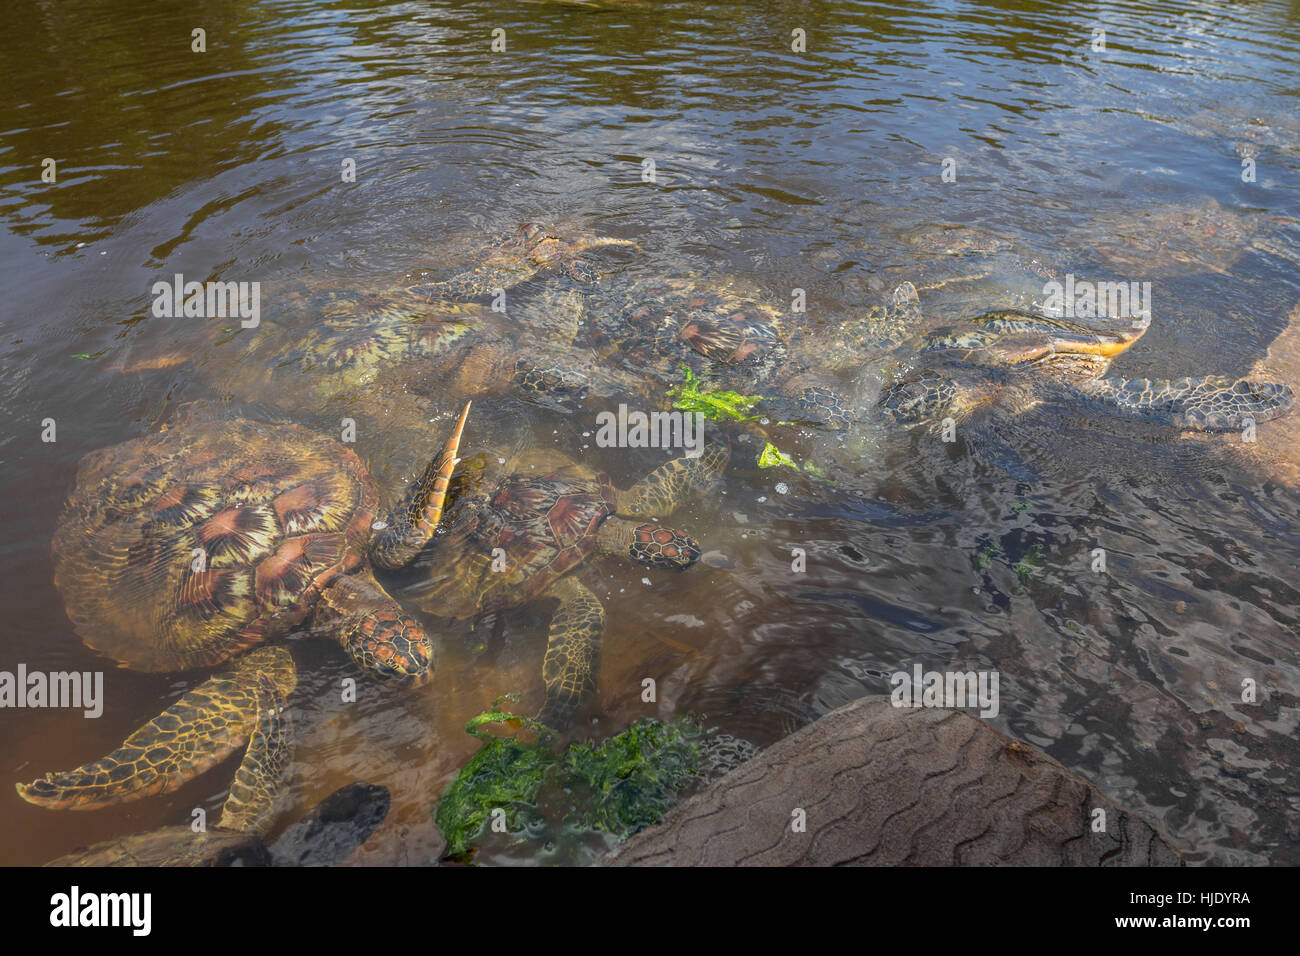 Grupo de tortugas marinas verdes alimentándose de algas, mucha competencia por el alimento, wsimming hacia la comida, Zanzíbar, Tanzania, África Foto de stock